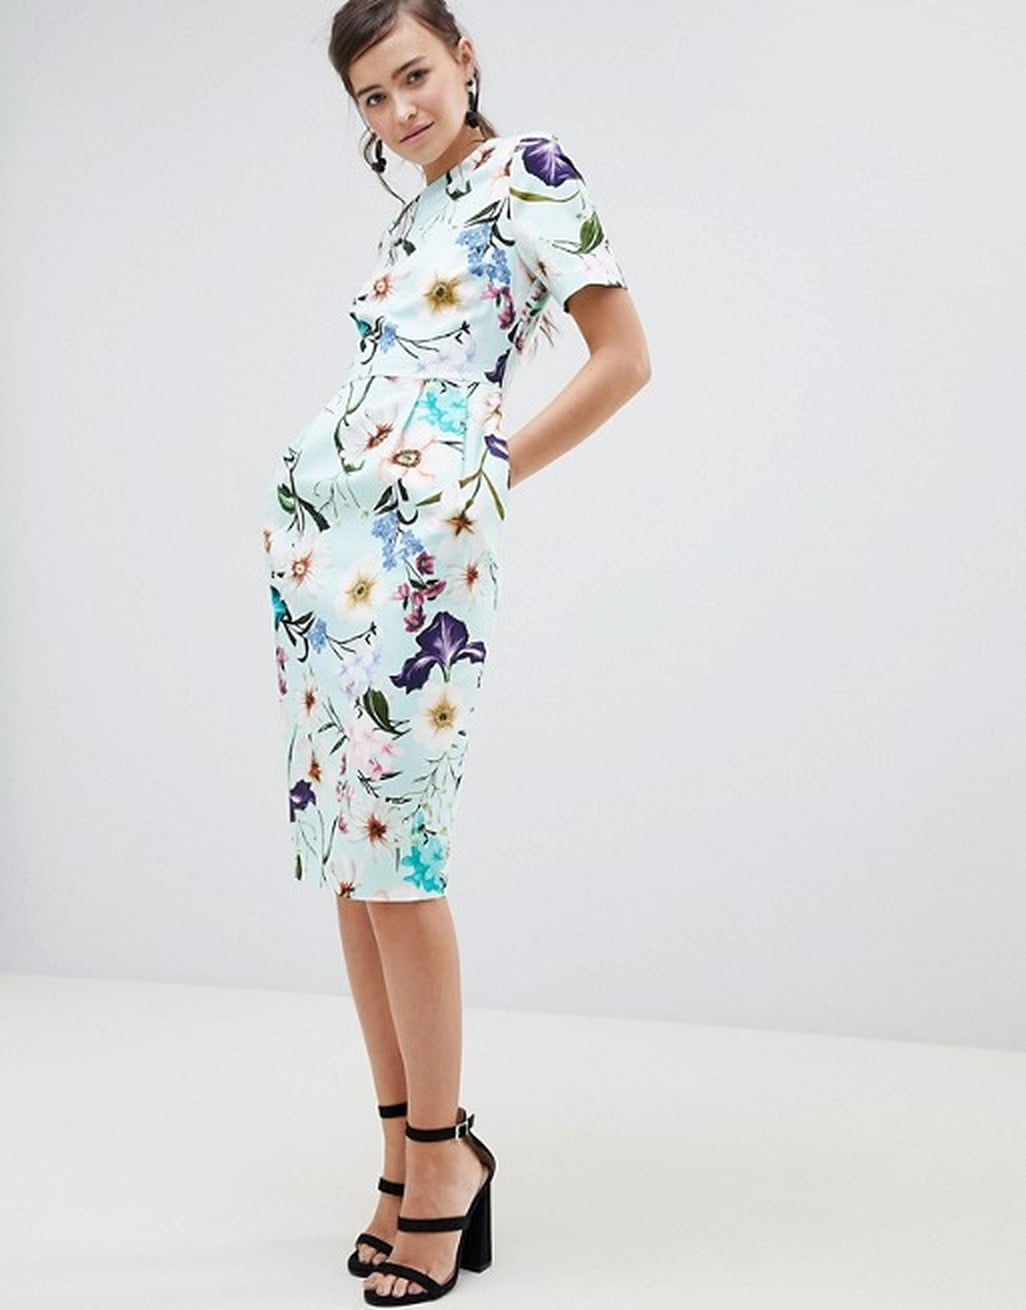 Adora's Calhoun Day Dress on Sharp Objects | POPSUGAR Fashion